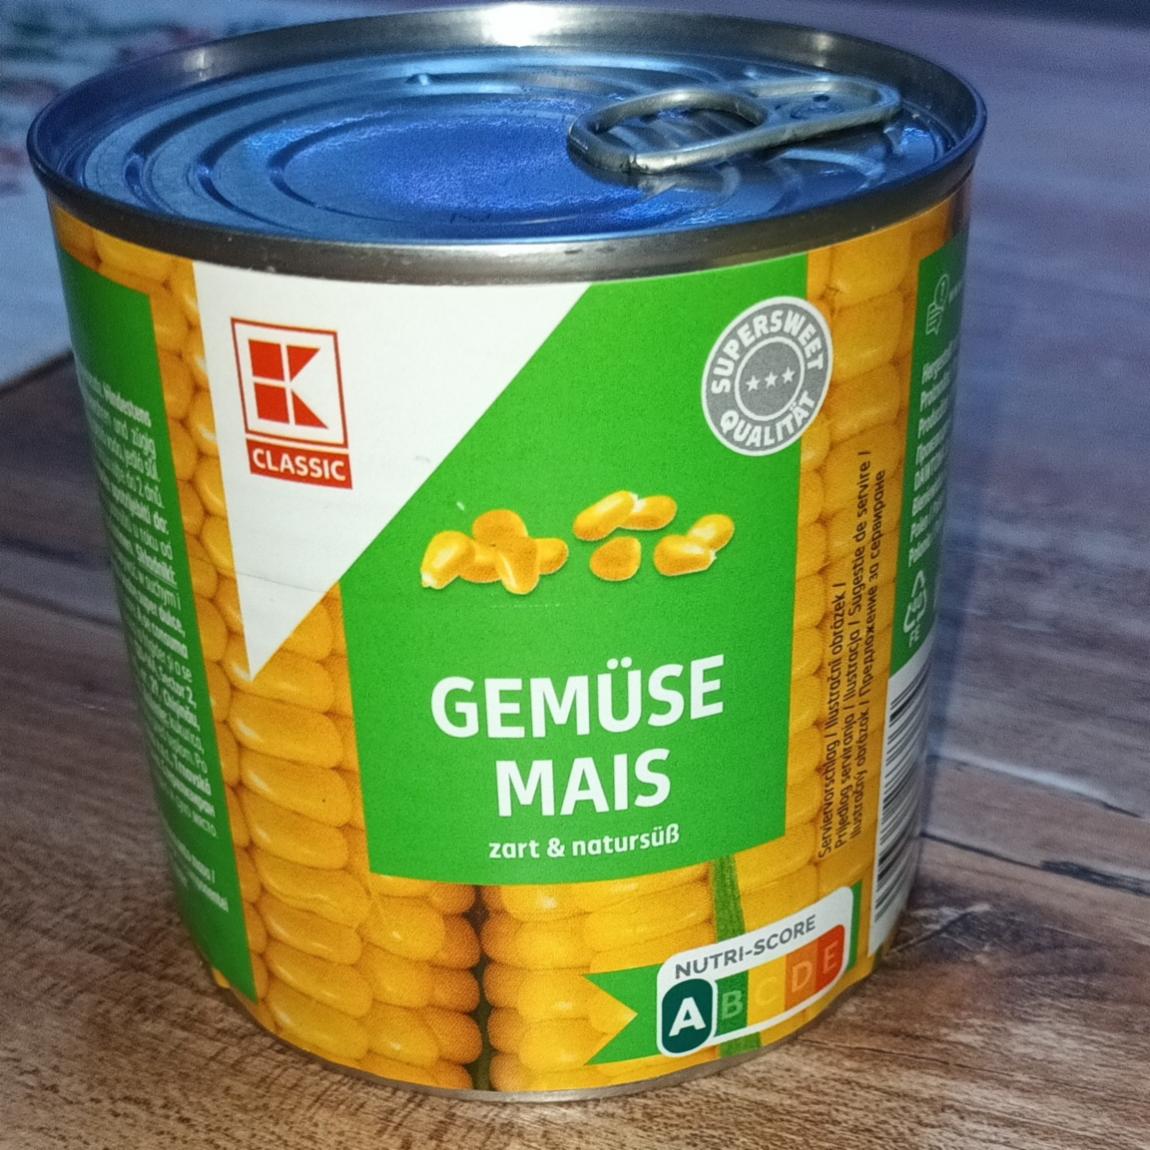 Képek - Kukorica konzerv Gemüse mais K-Classic